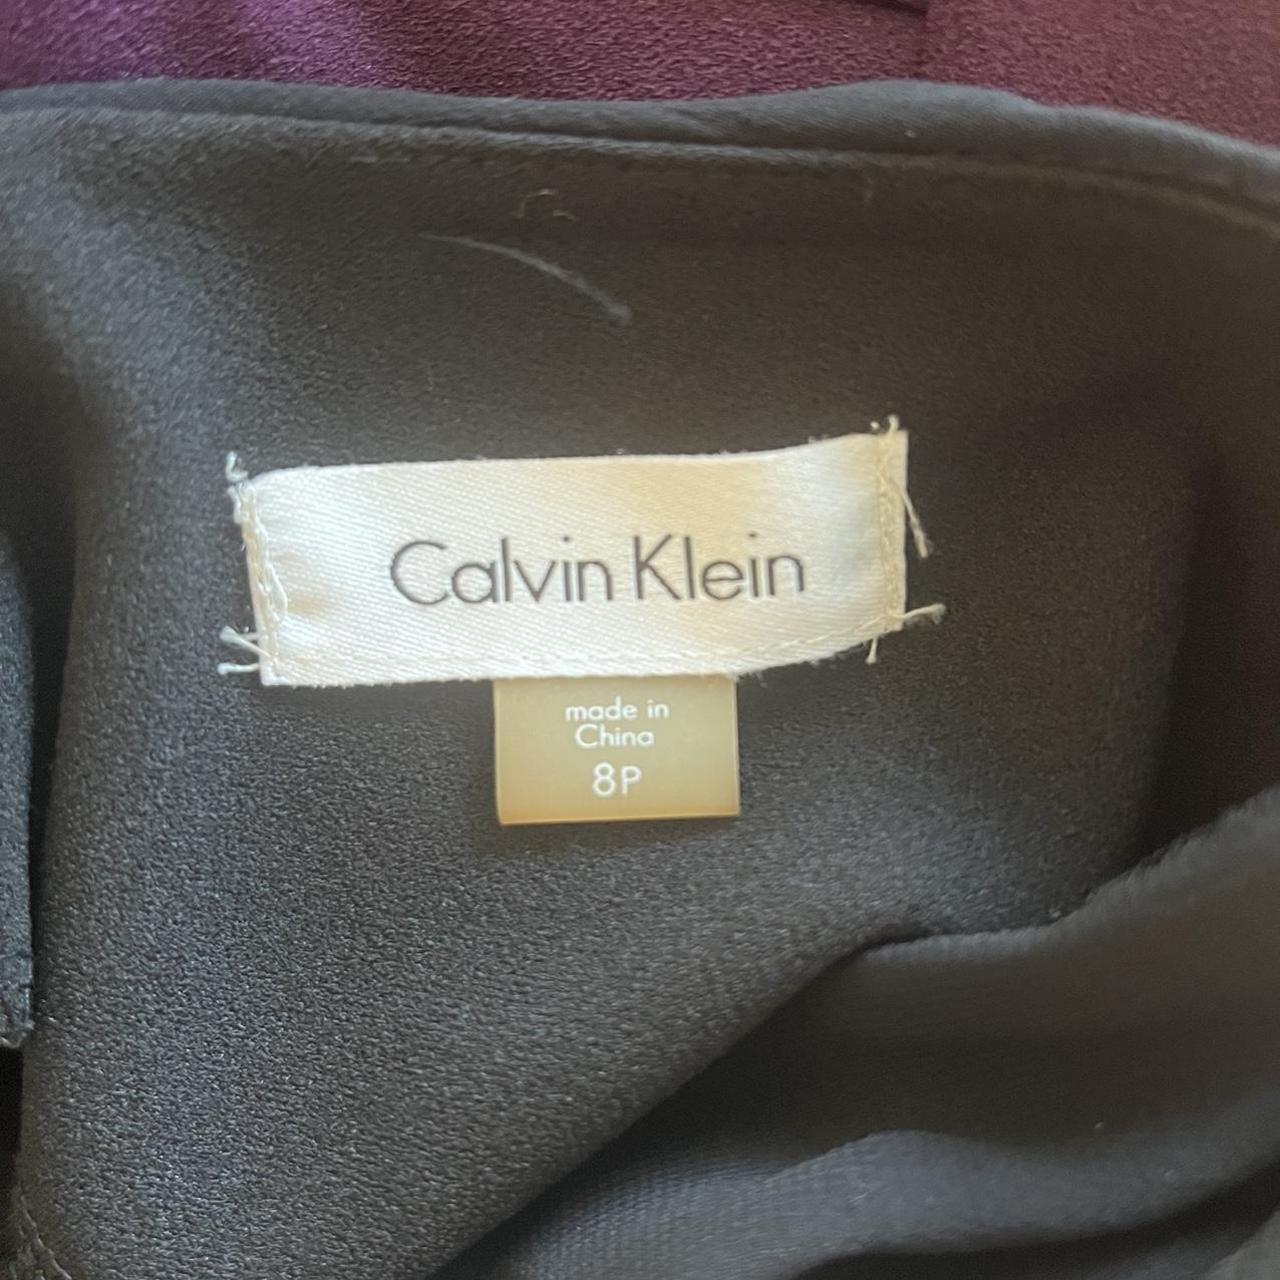 ELEGANT BLACK CALVIN KLEIN DRESS! super super... - Depop